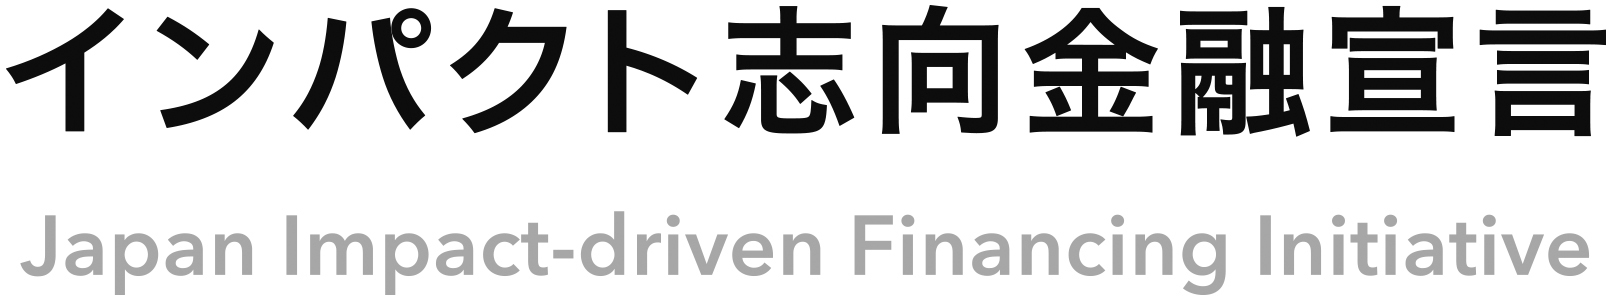 logo of Impact-driven Financing Initiative